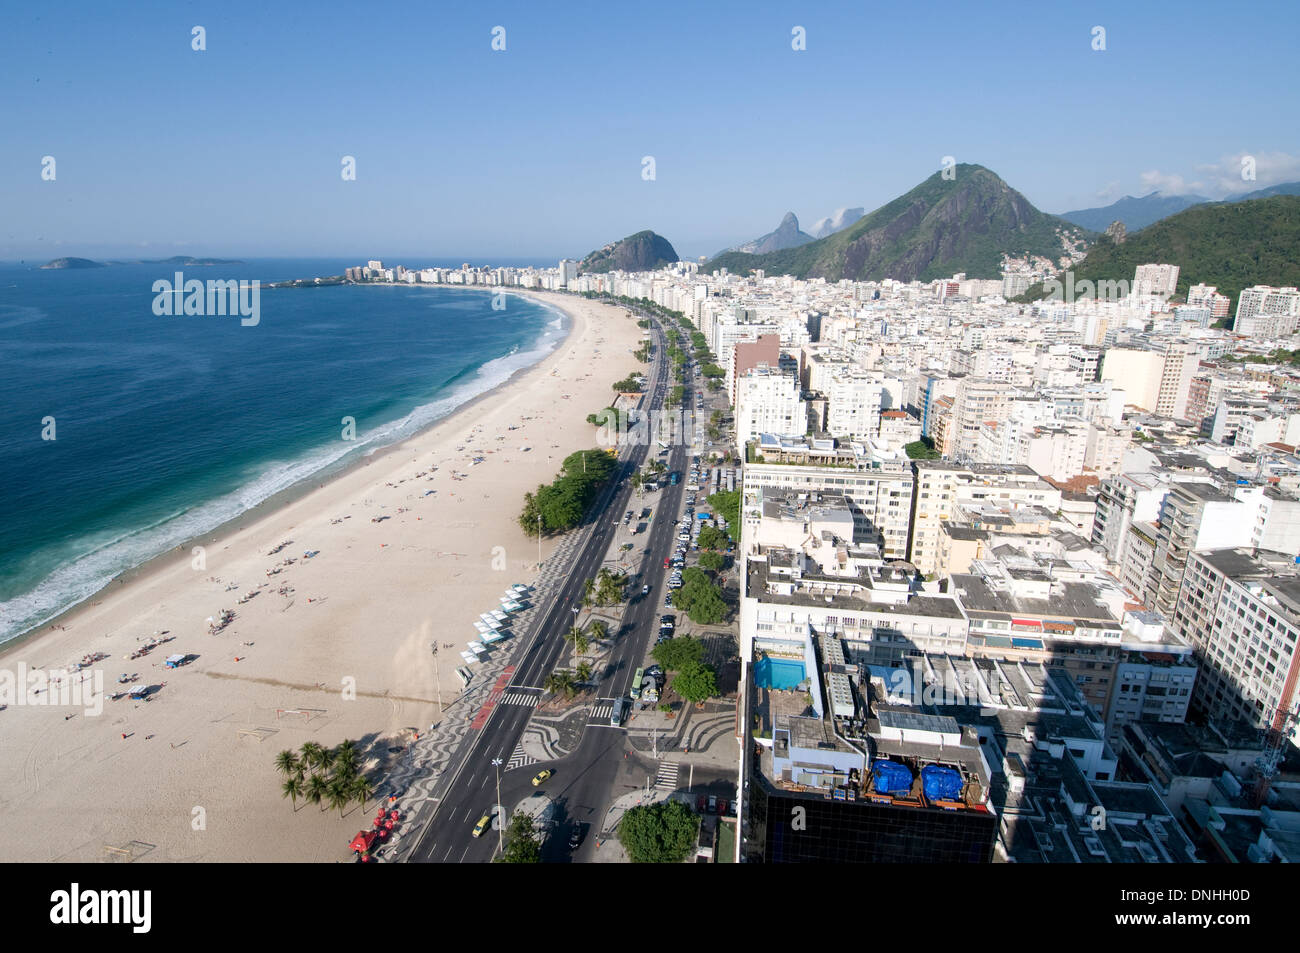 The southern end of Copacabana beach in Rio de Janeiro in Brazil. Stock Photo